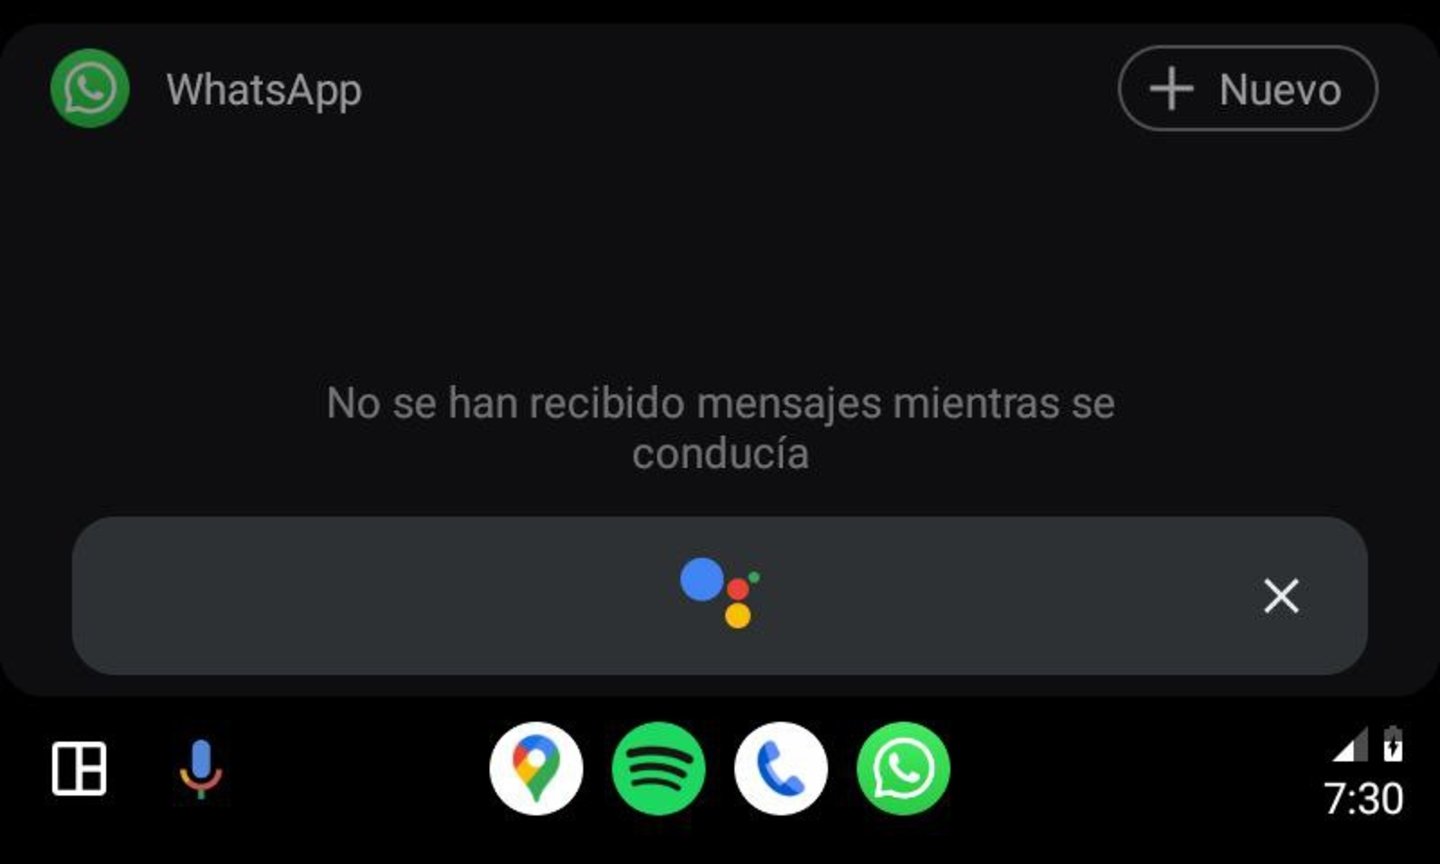 Cómo usar WhatsApp en Android Auto sin que nos multen